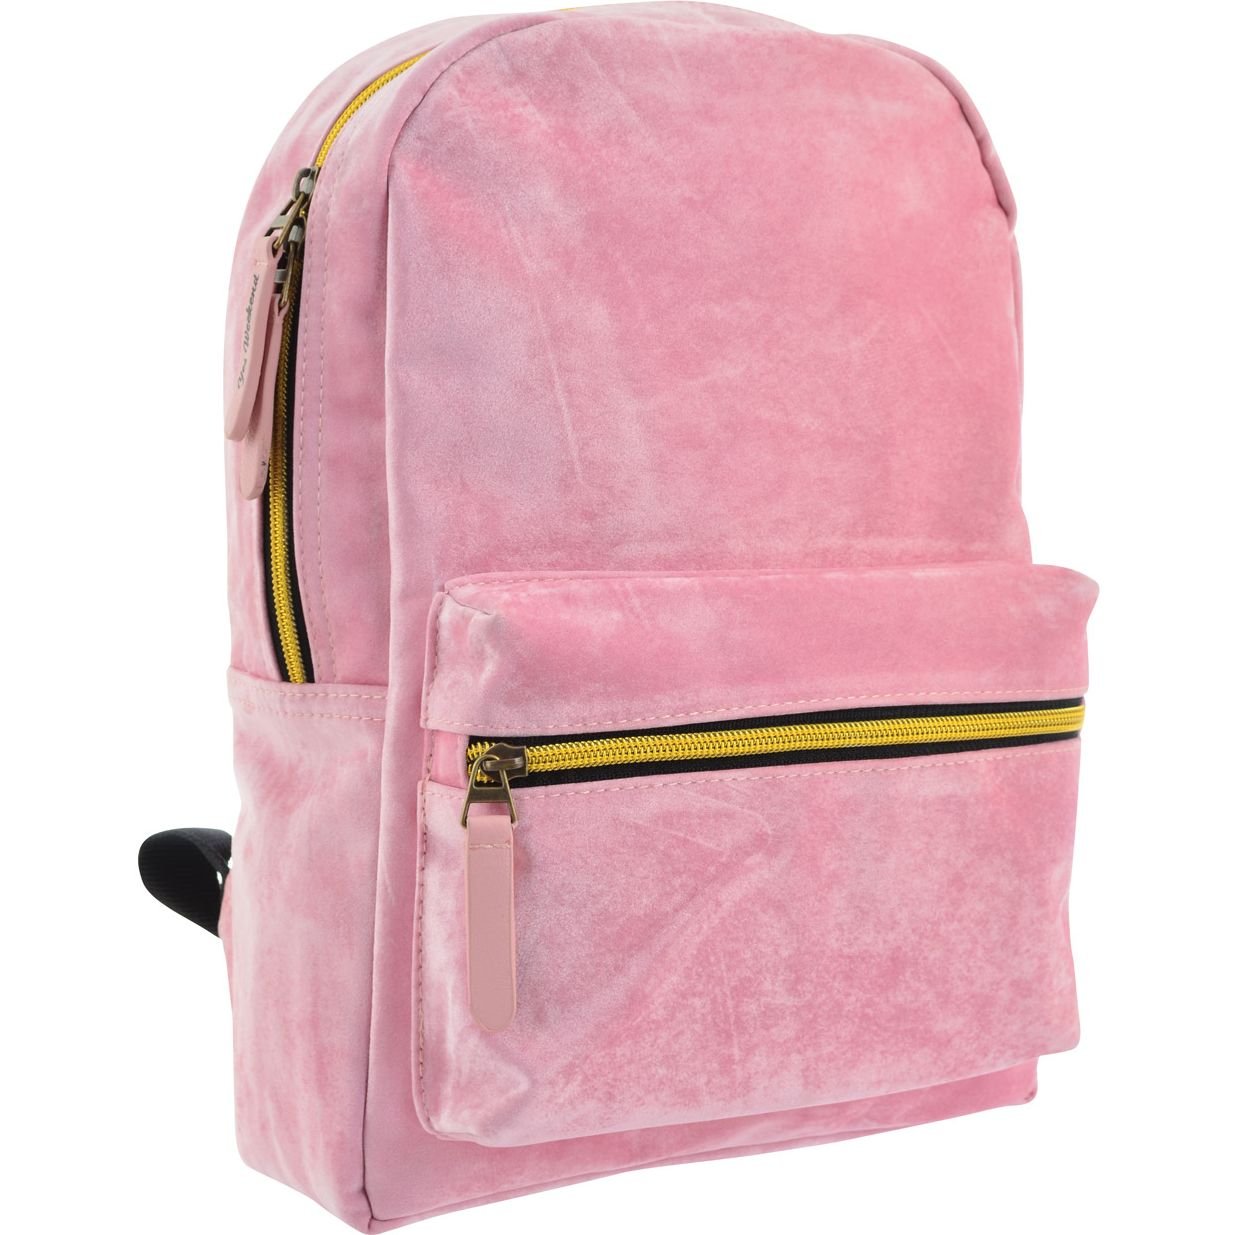 Рюкзак жіночий Yes YW-21 Velour Marlin, рожевий (556900) - фото 2